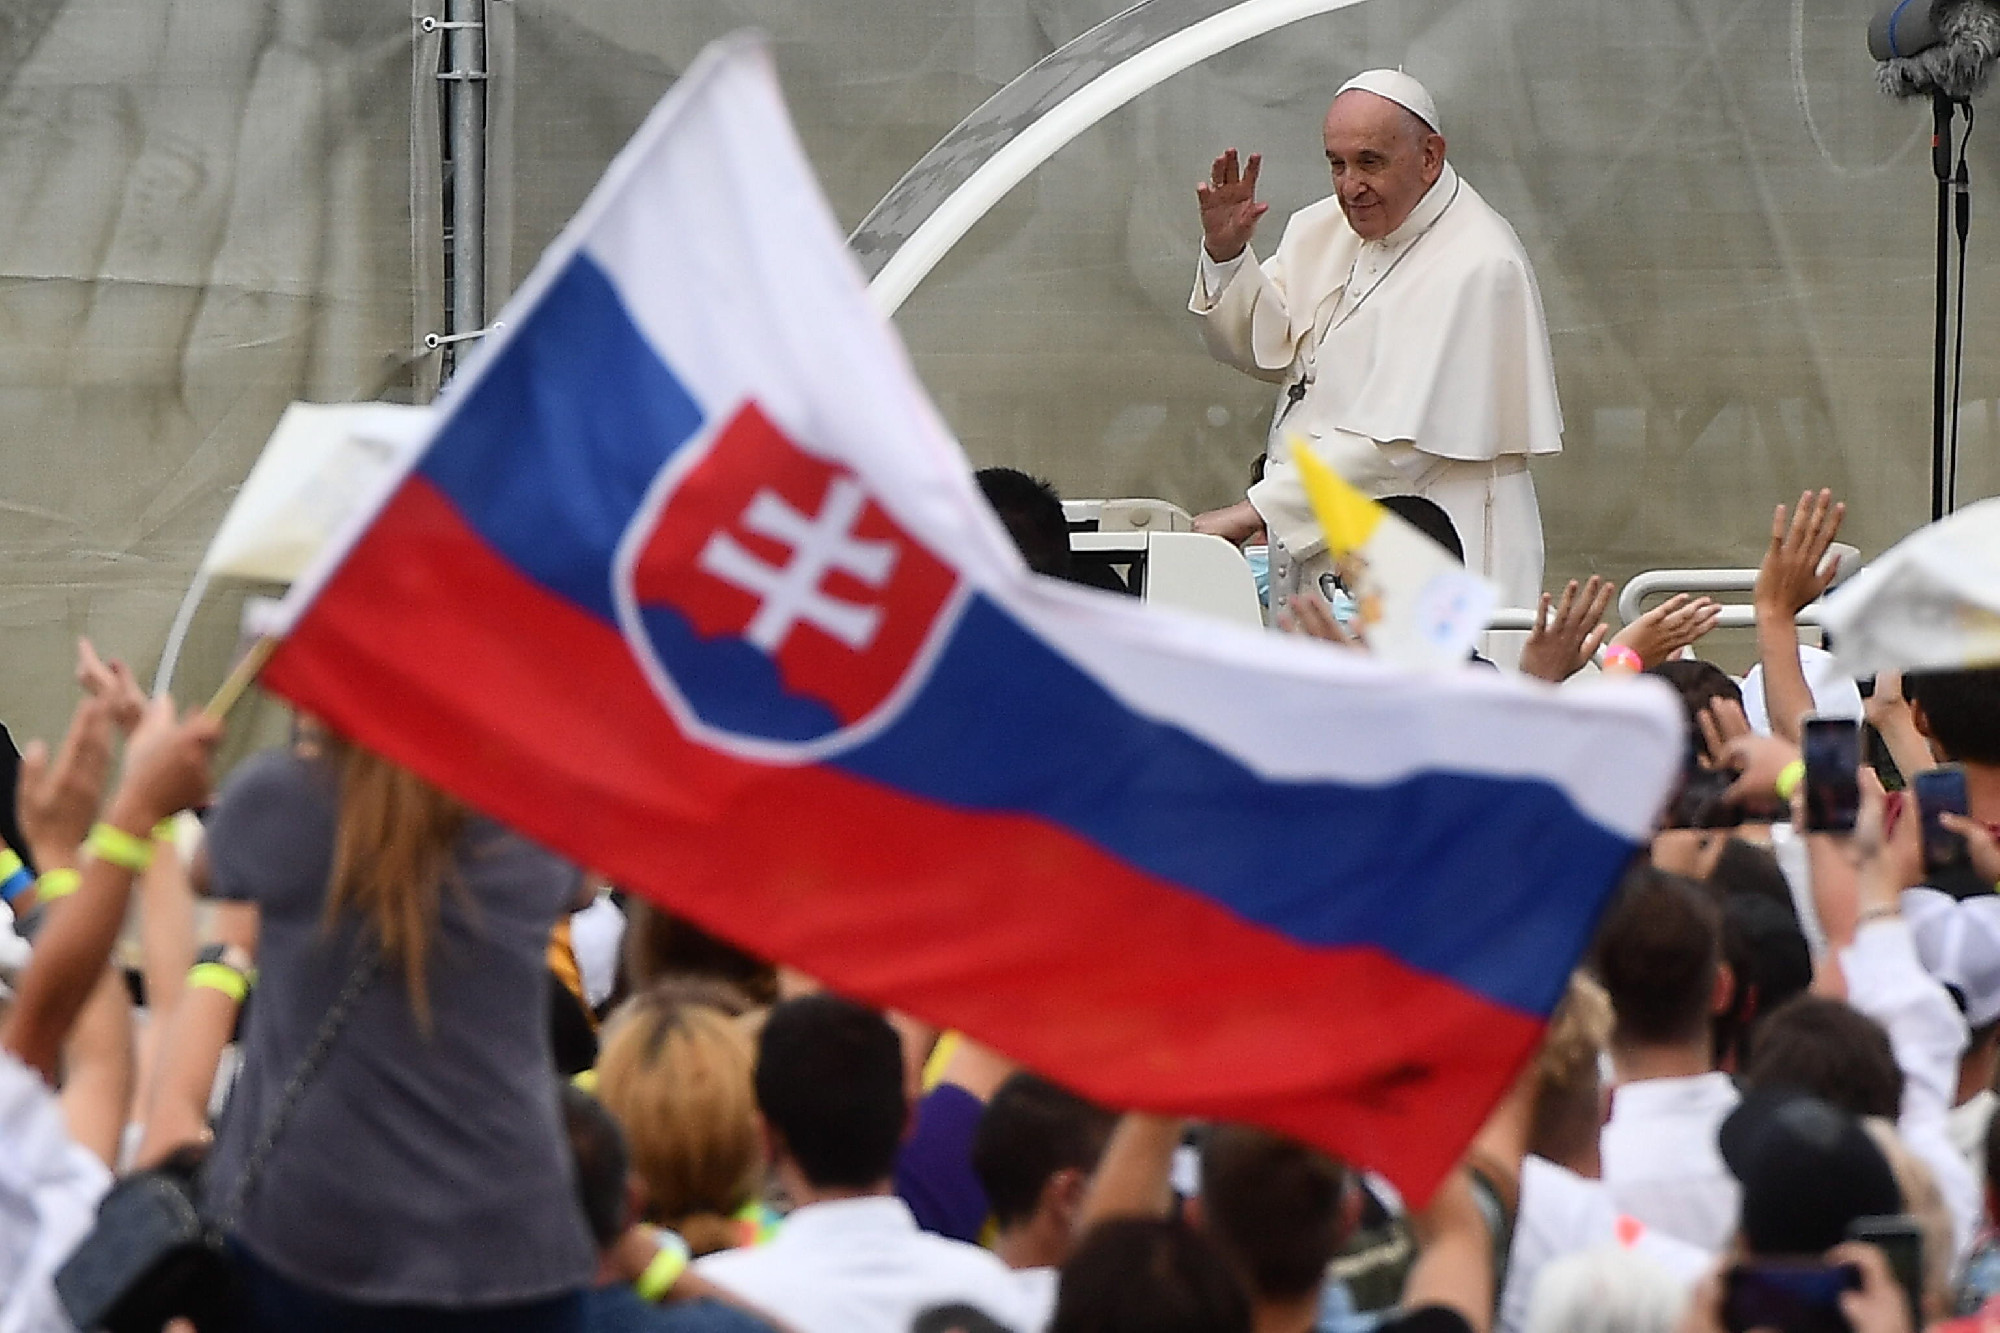 Ferenc pápa Szlovákiában